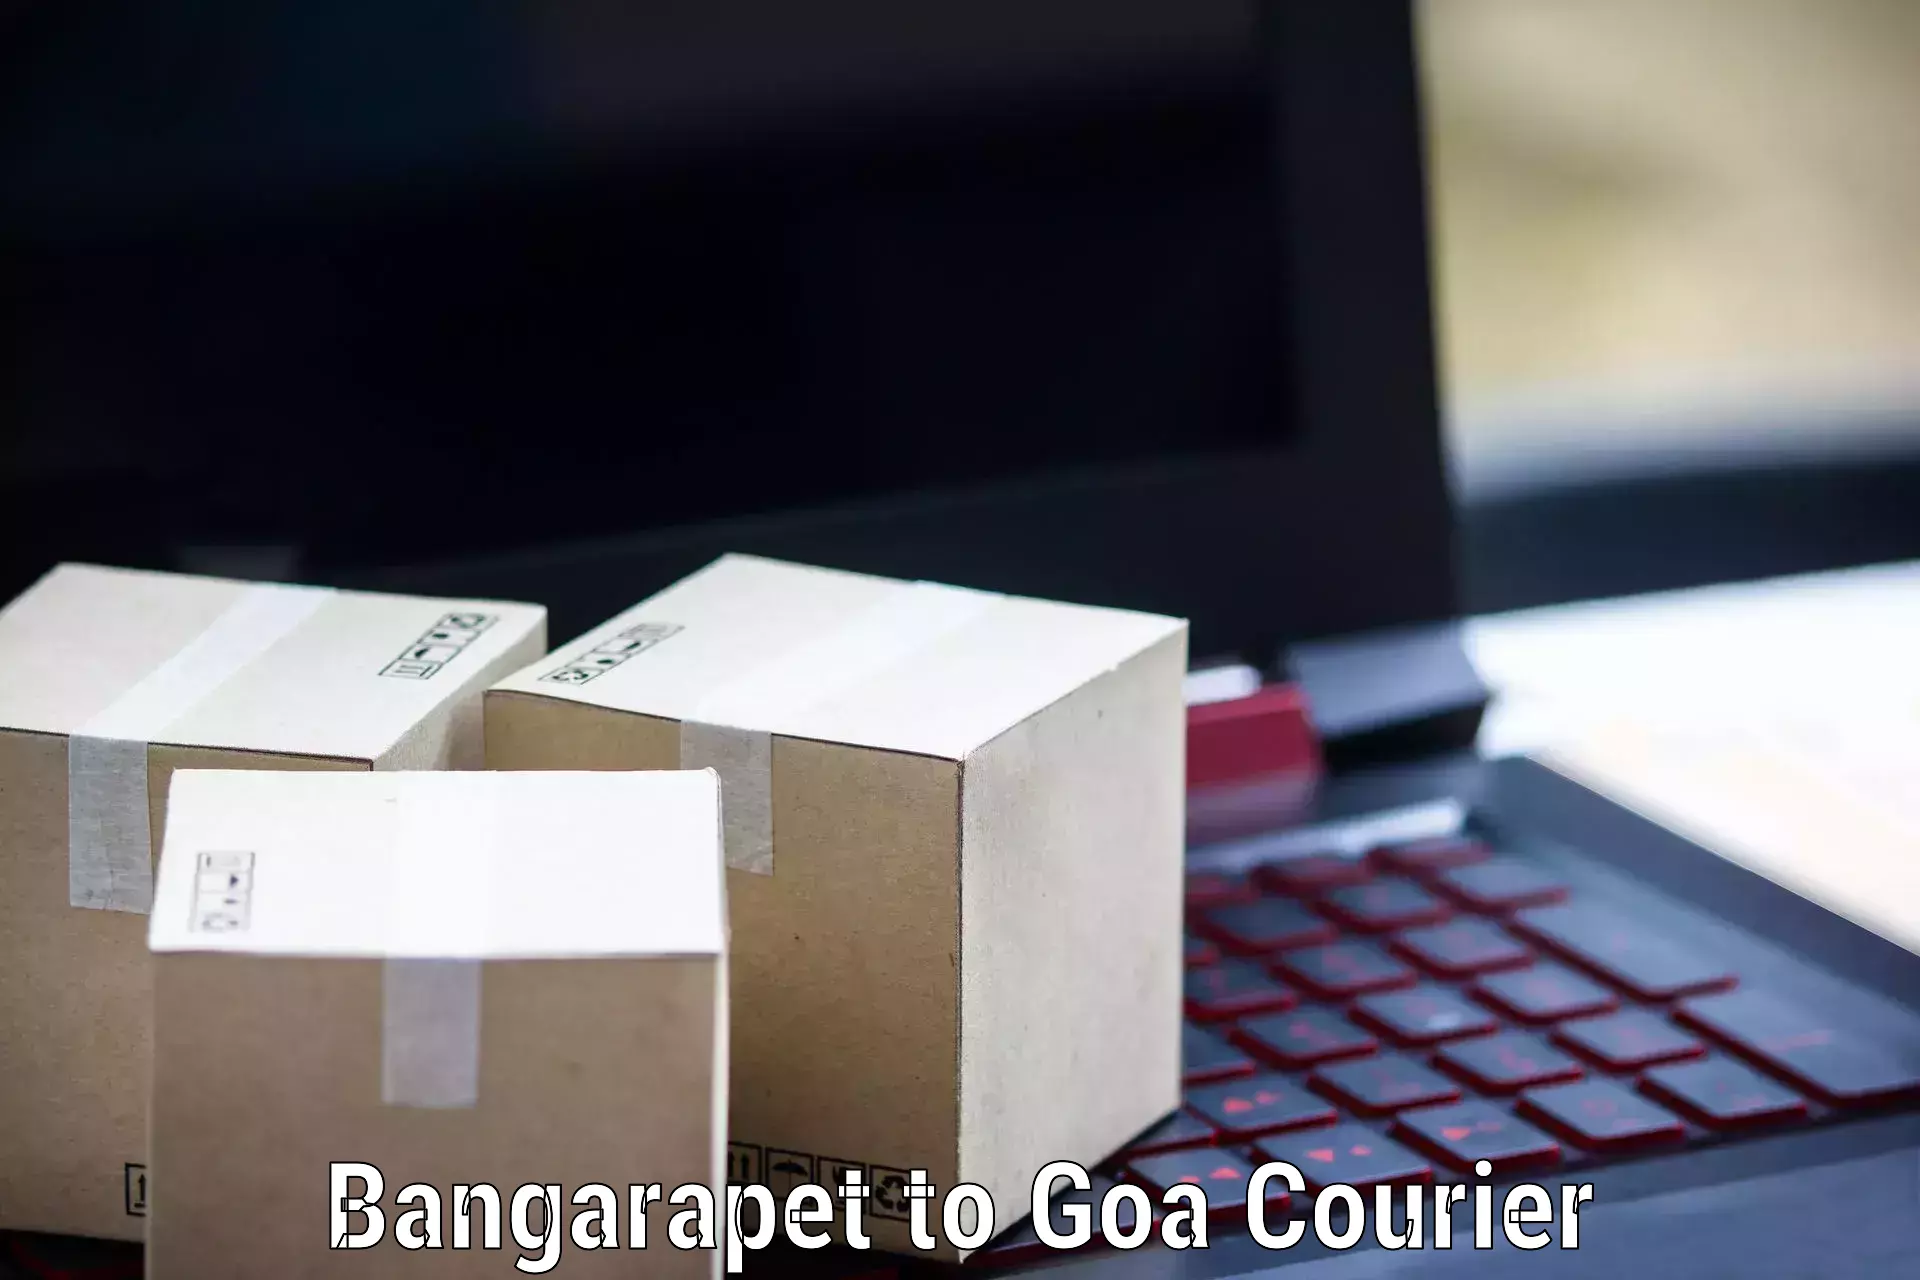 Comprehensive shipping network Bangarapet to Panaji